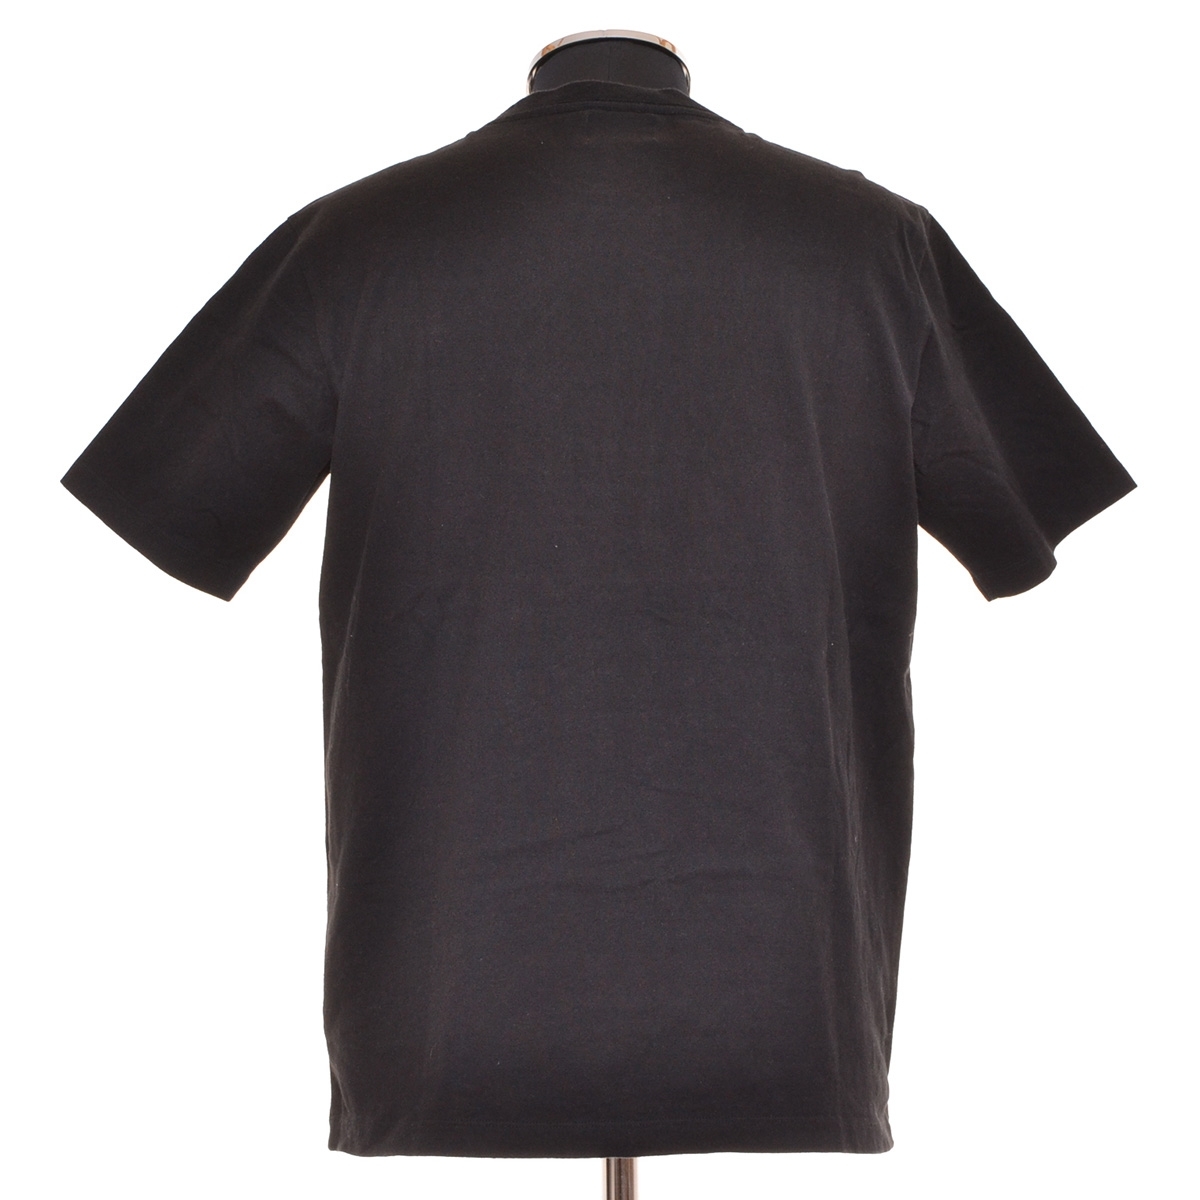 0467221 Arnold Palmer Arnold Palmer 0 pocket T-shirt short sleeves size L men's black 